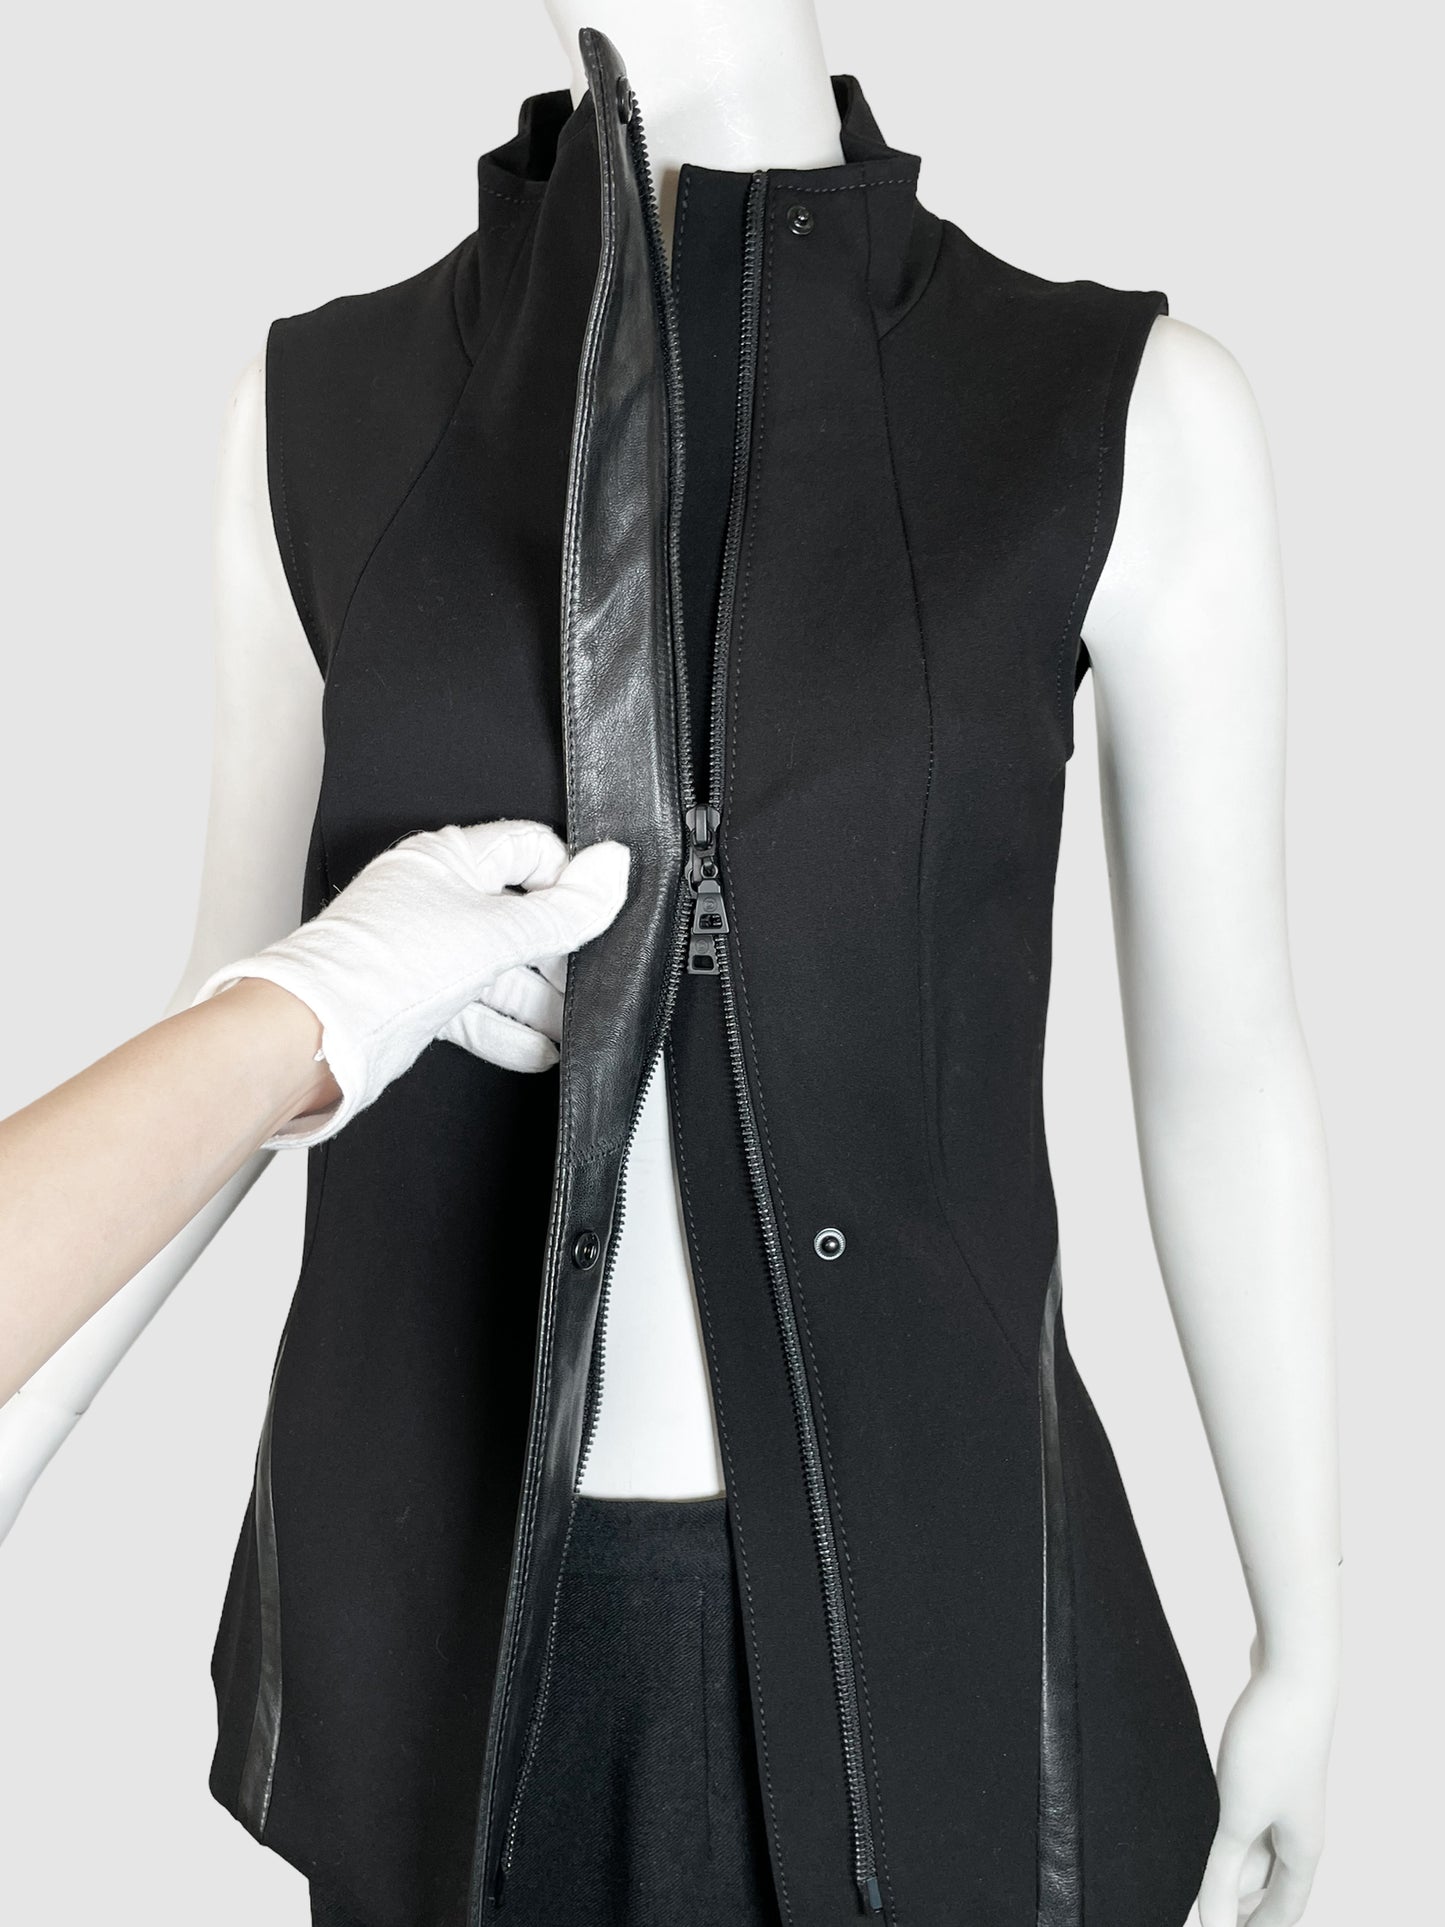 Danier Leather Trim Vest - Size S